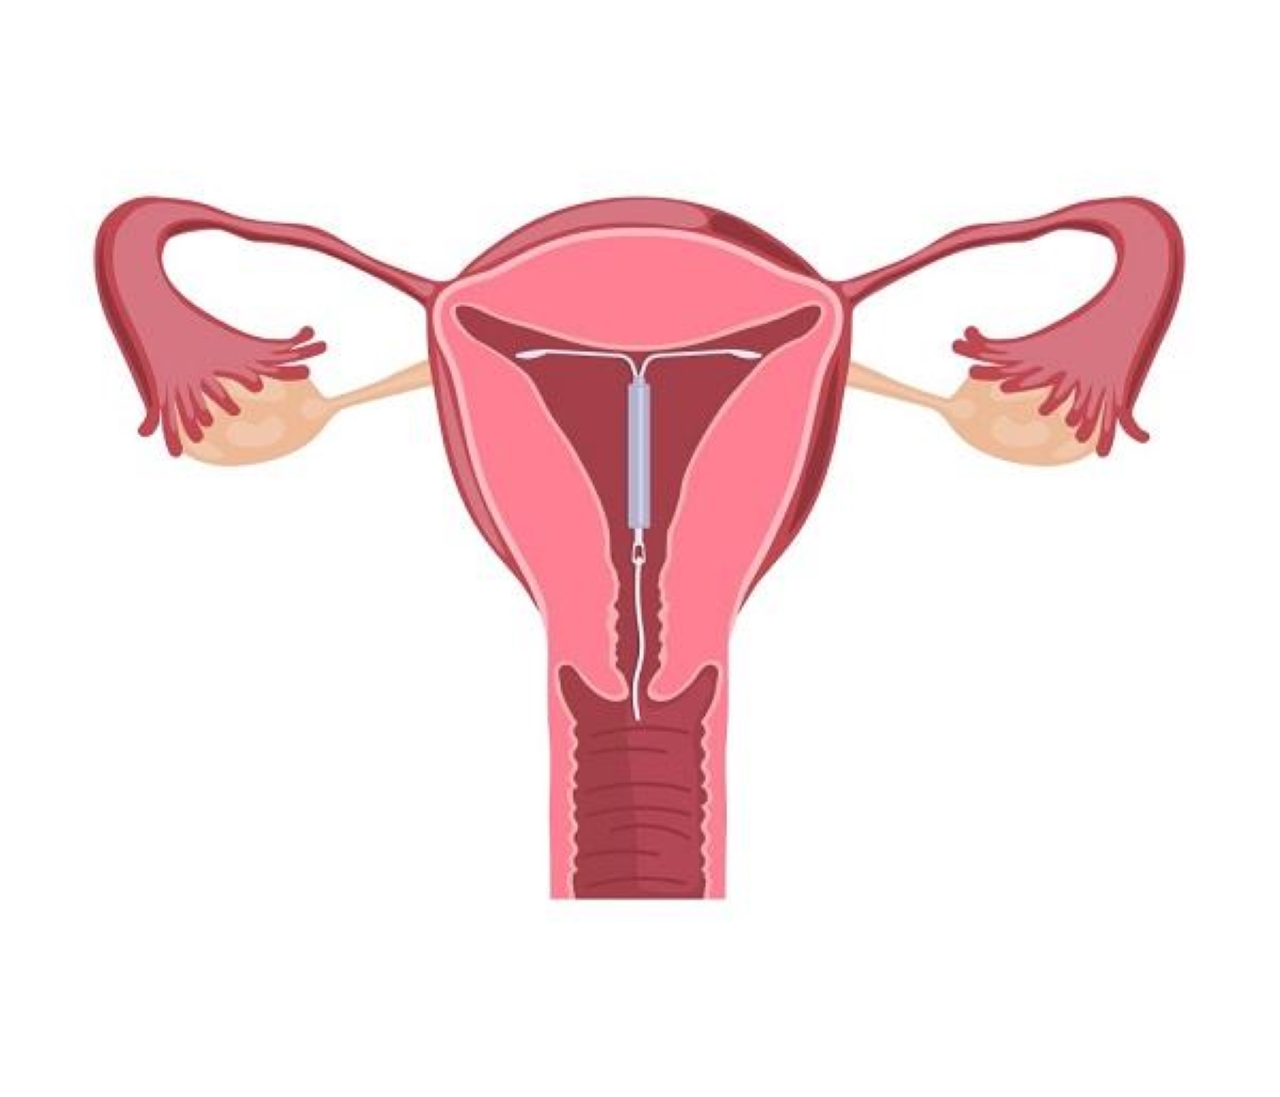 Đặt vòng tránh thai có những loại nào và nên lưu ý những gì